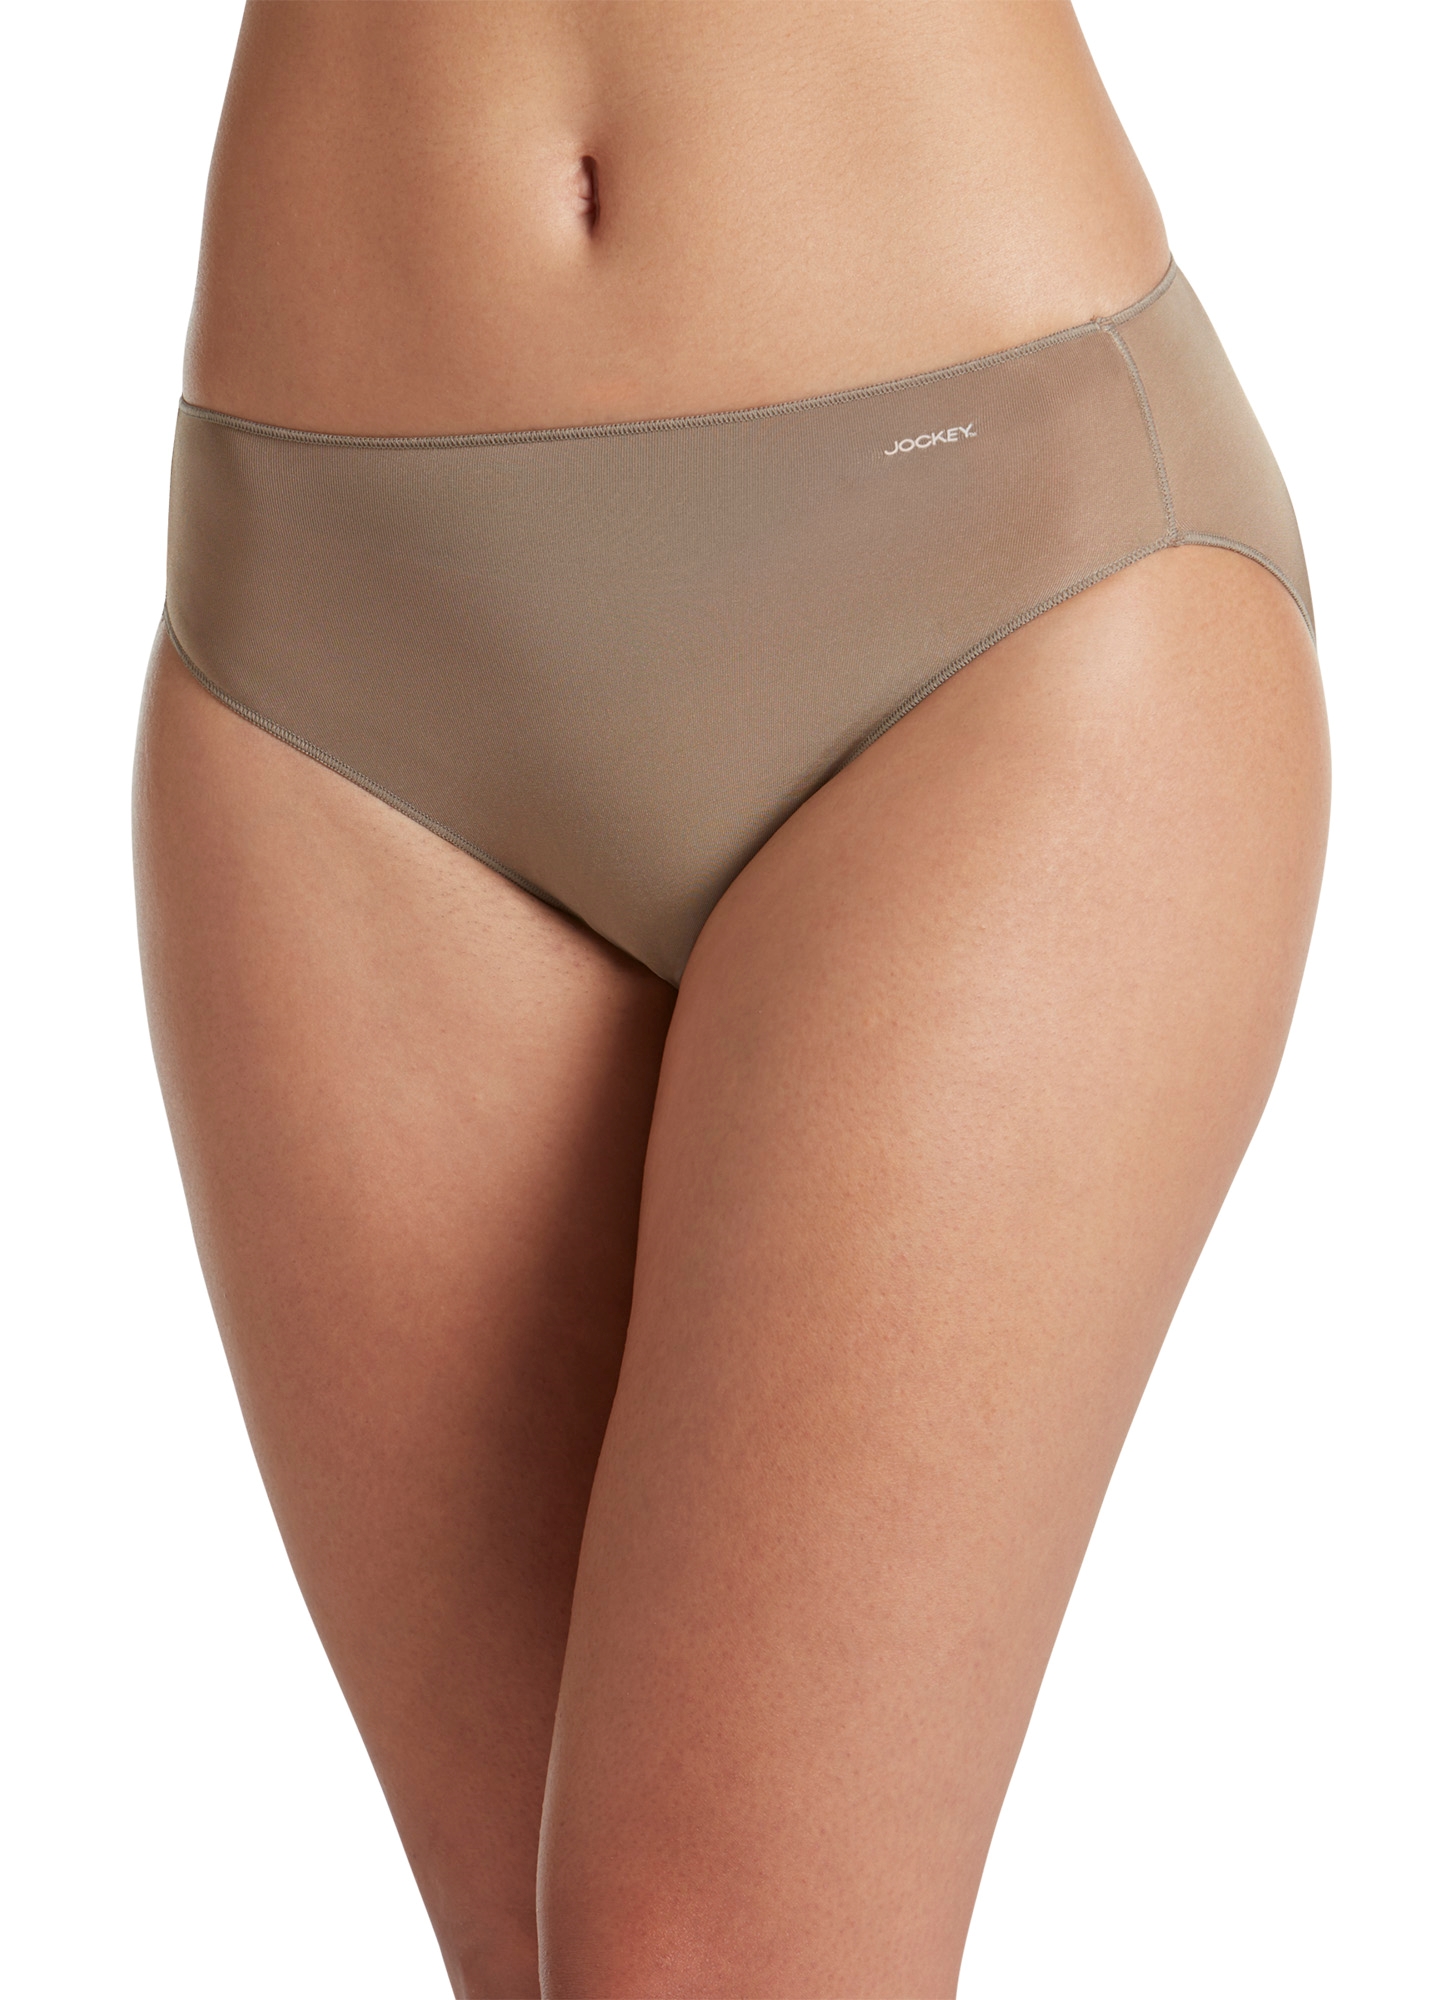 Women's Underwear   No Panty Line Promise  Tactel  Bikini, Deep Beige, 6